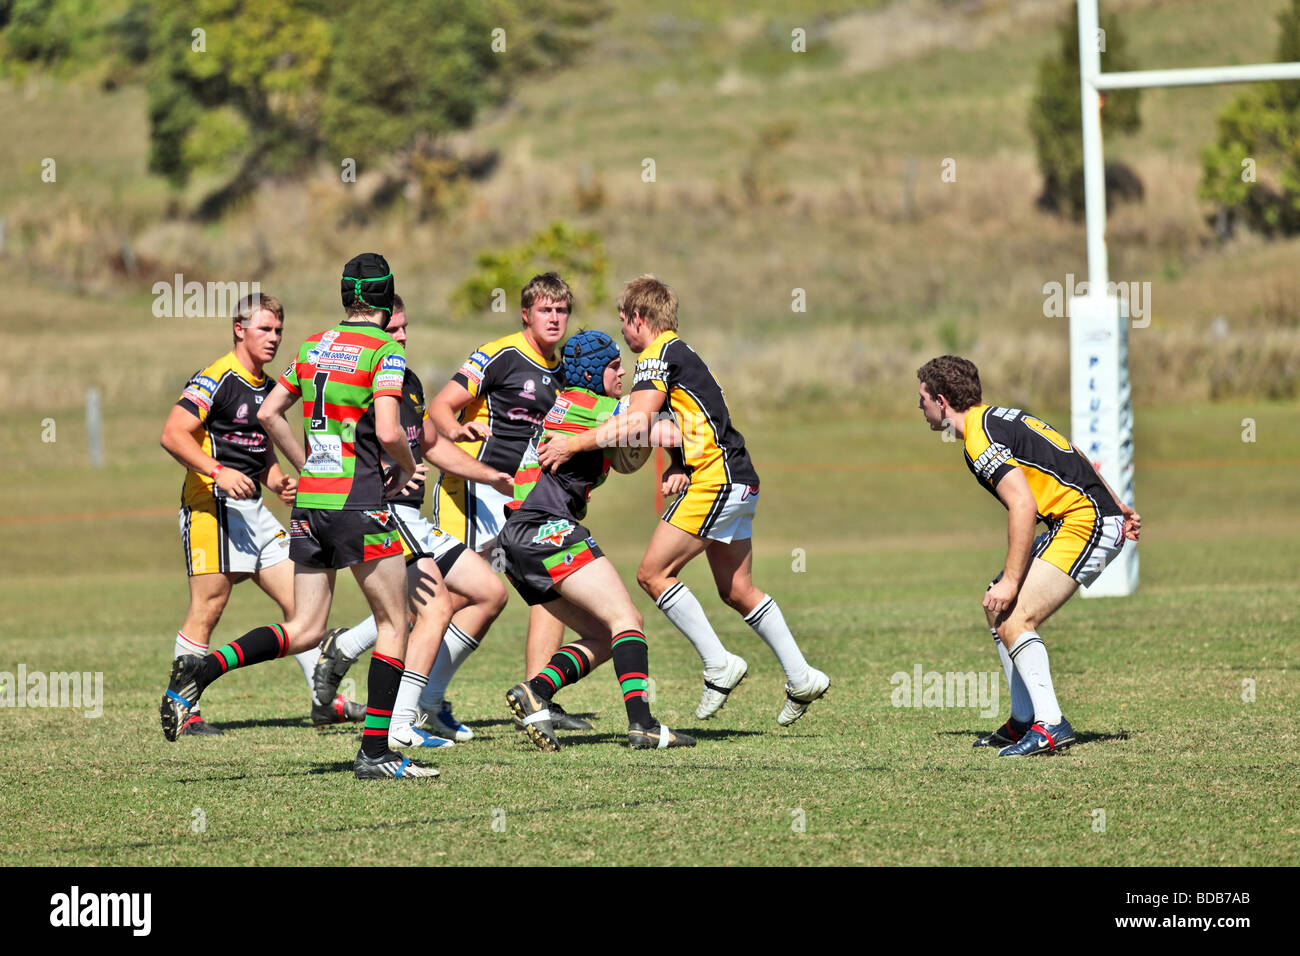 Teams der australischen Rugby-Liga ein Spiel mit Elementen von einem Scrum laufen tretend und tackle Stockfoto